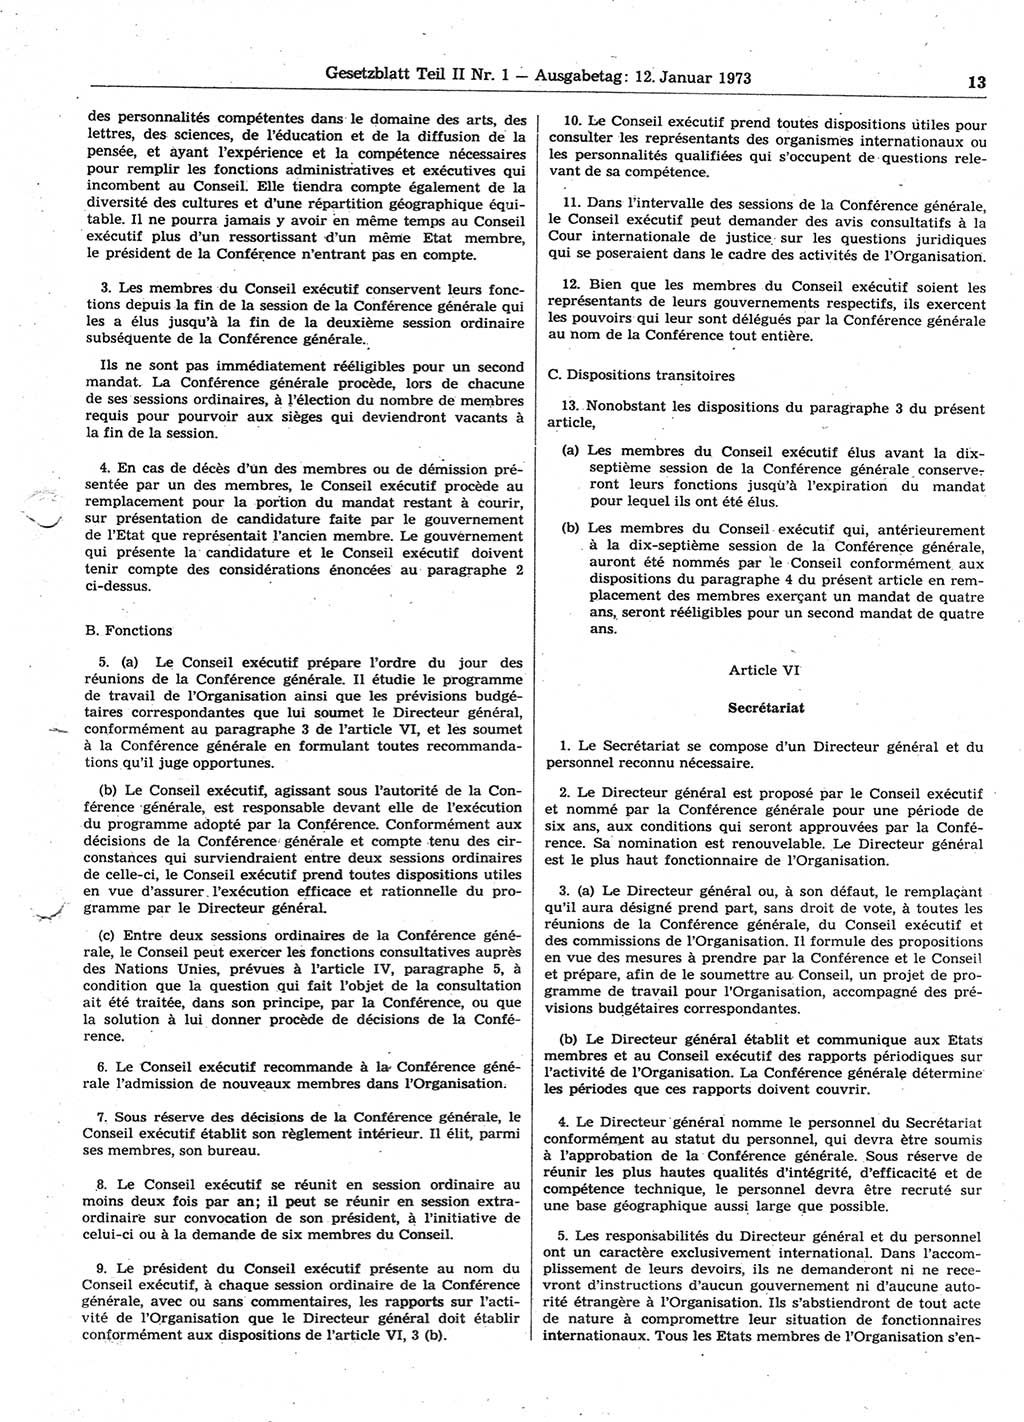 Gesetzblatt (GBl.) der Deutschen Demokratischen Republik (DDR) Teil ⅠⅠ 1973, Seite 13 (GBl. DDR ⅠⅠ 1973, S. 13)